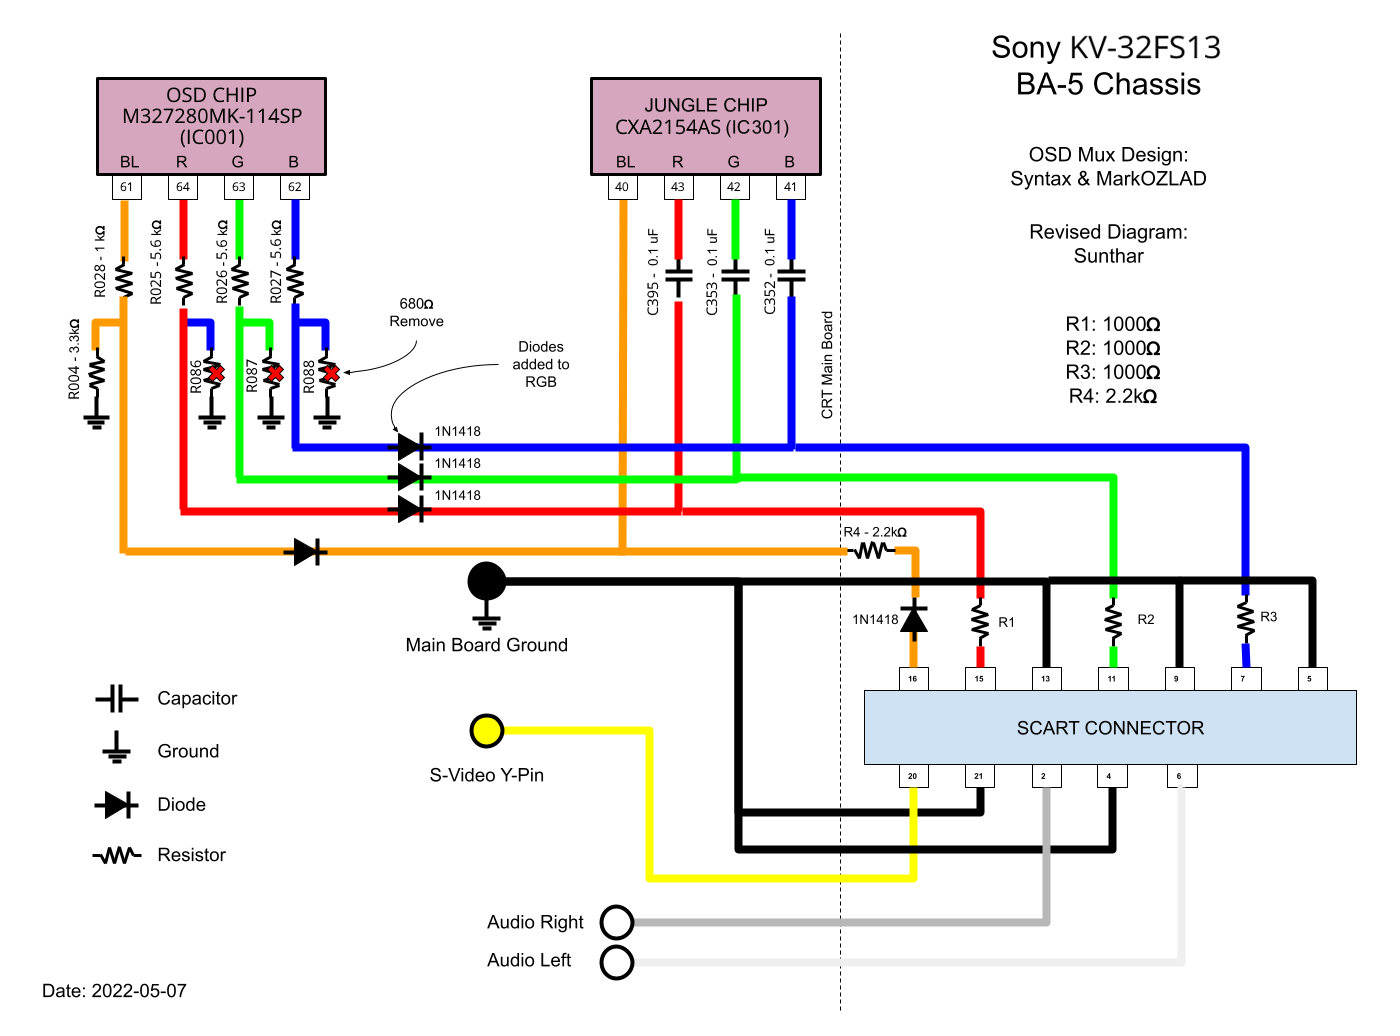 Sony BA-5 chassis RGB mod mux diagram